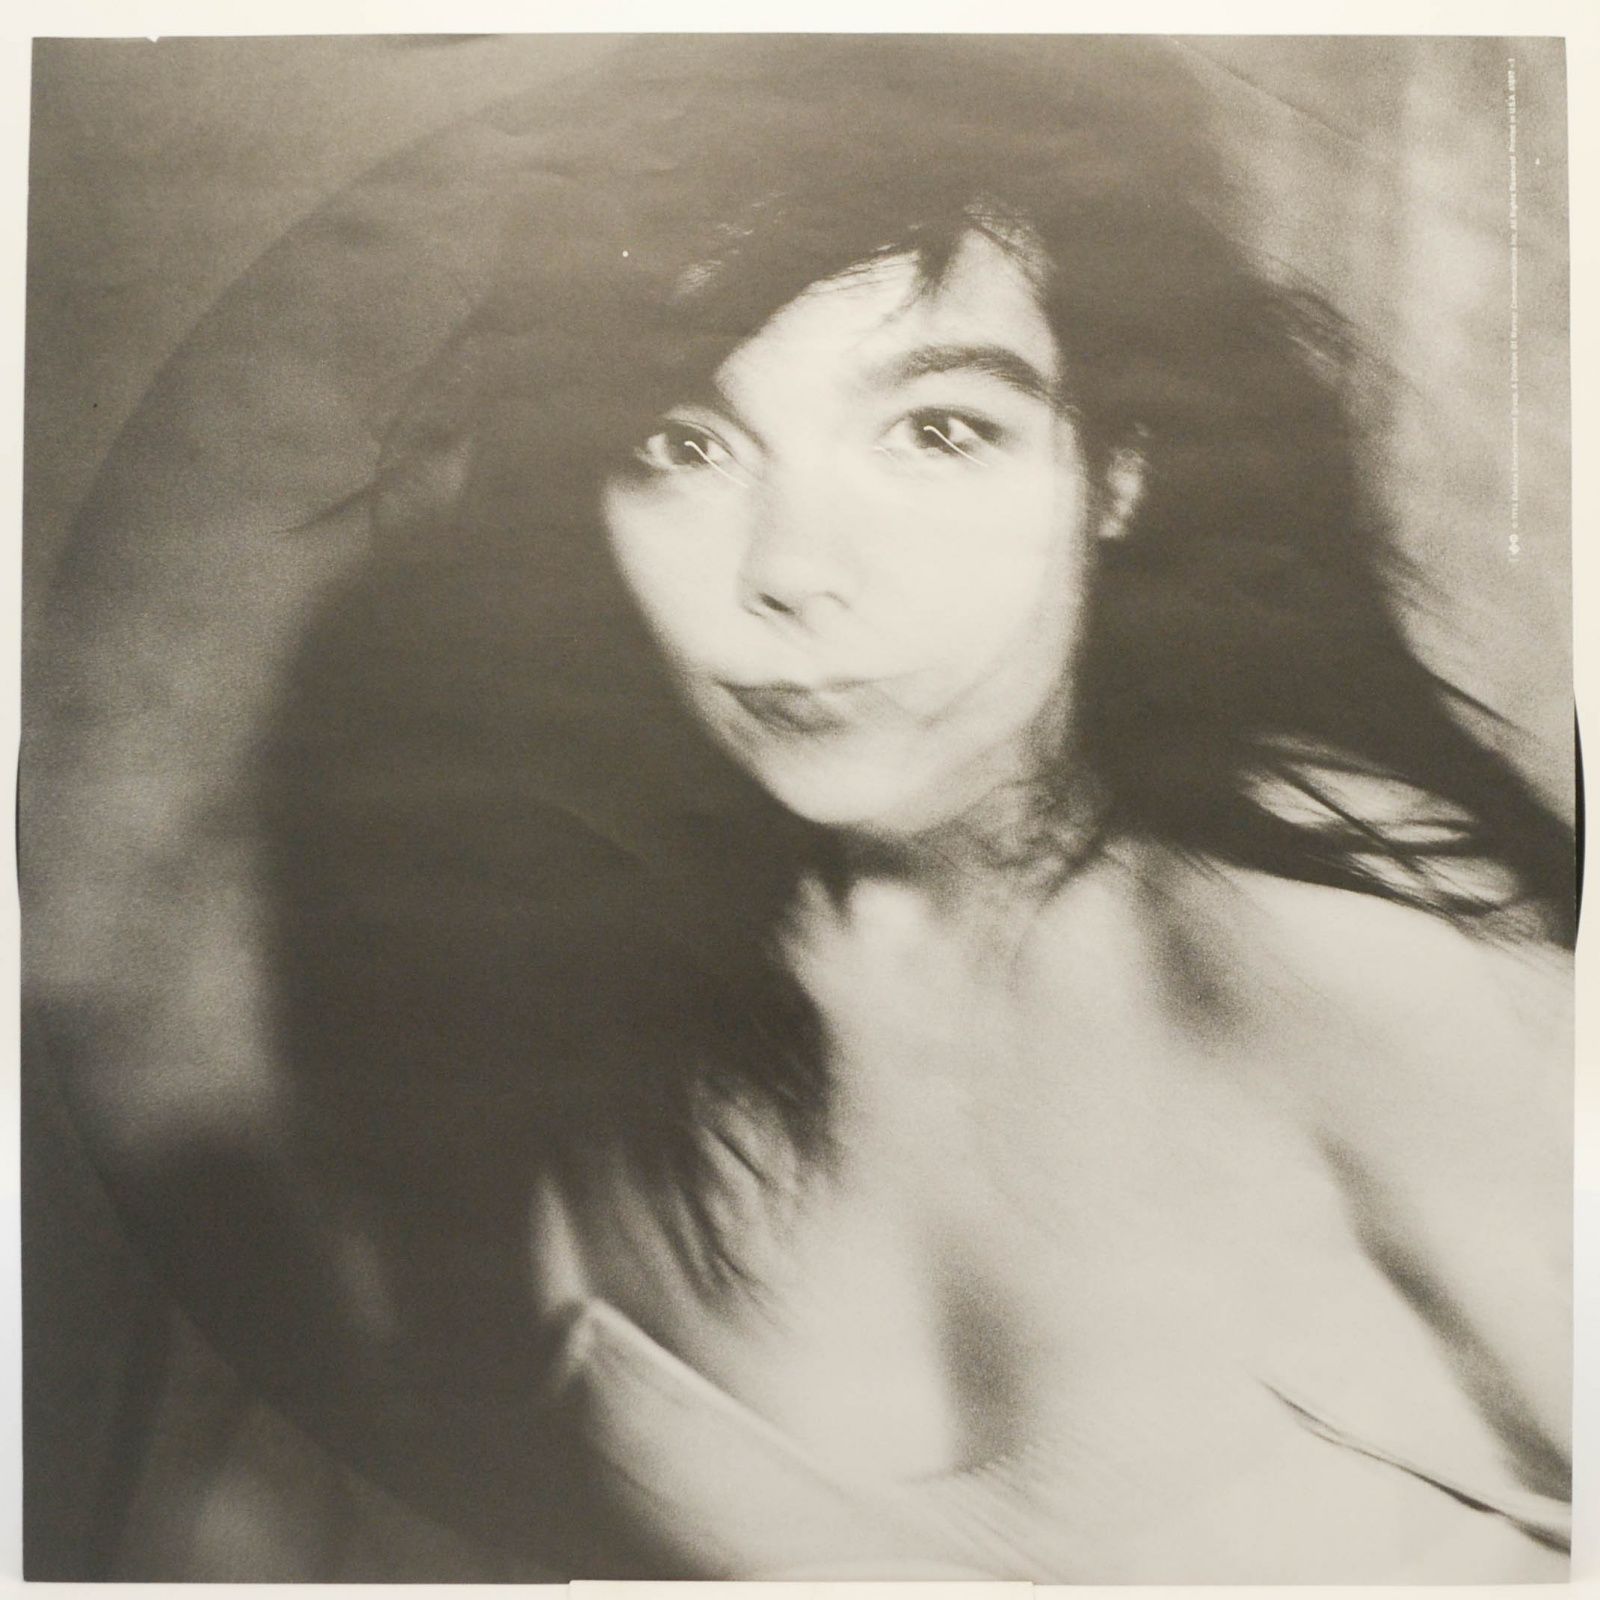 Björk — Telegram, 1997